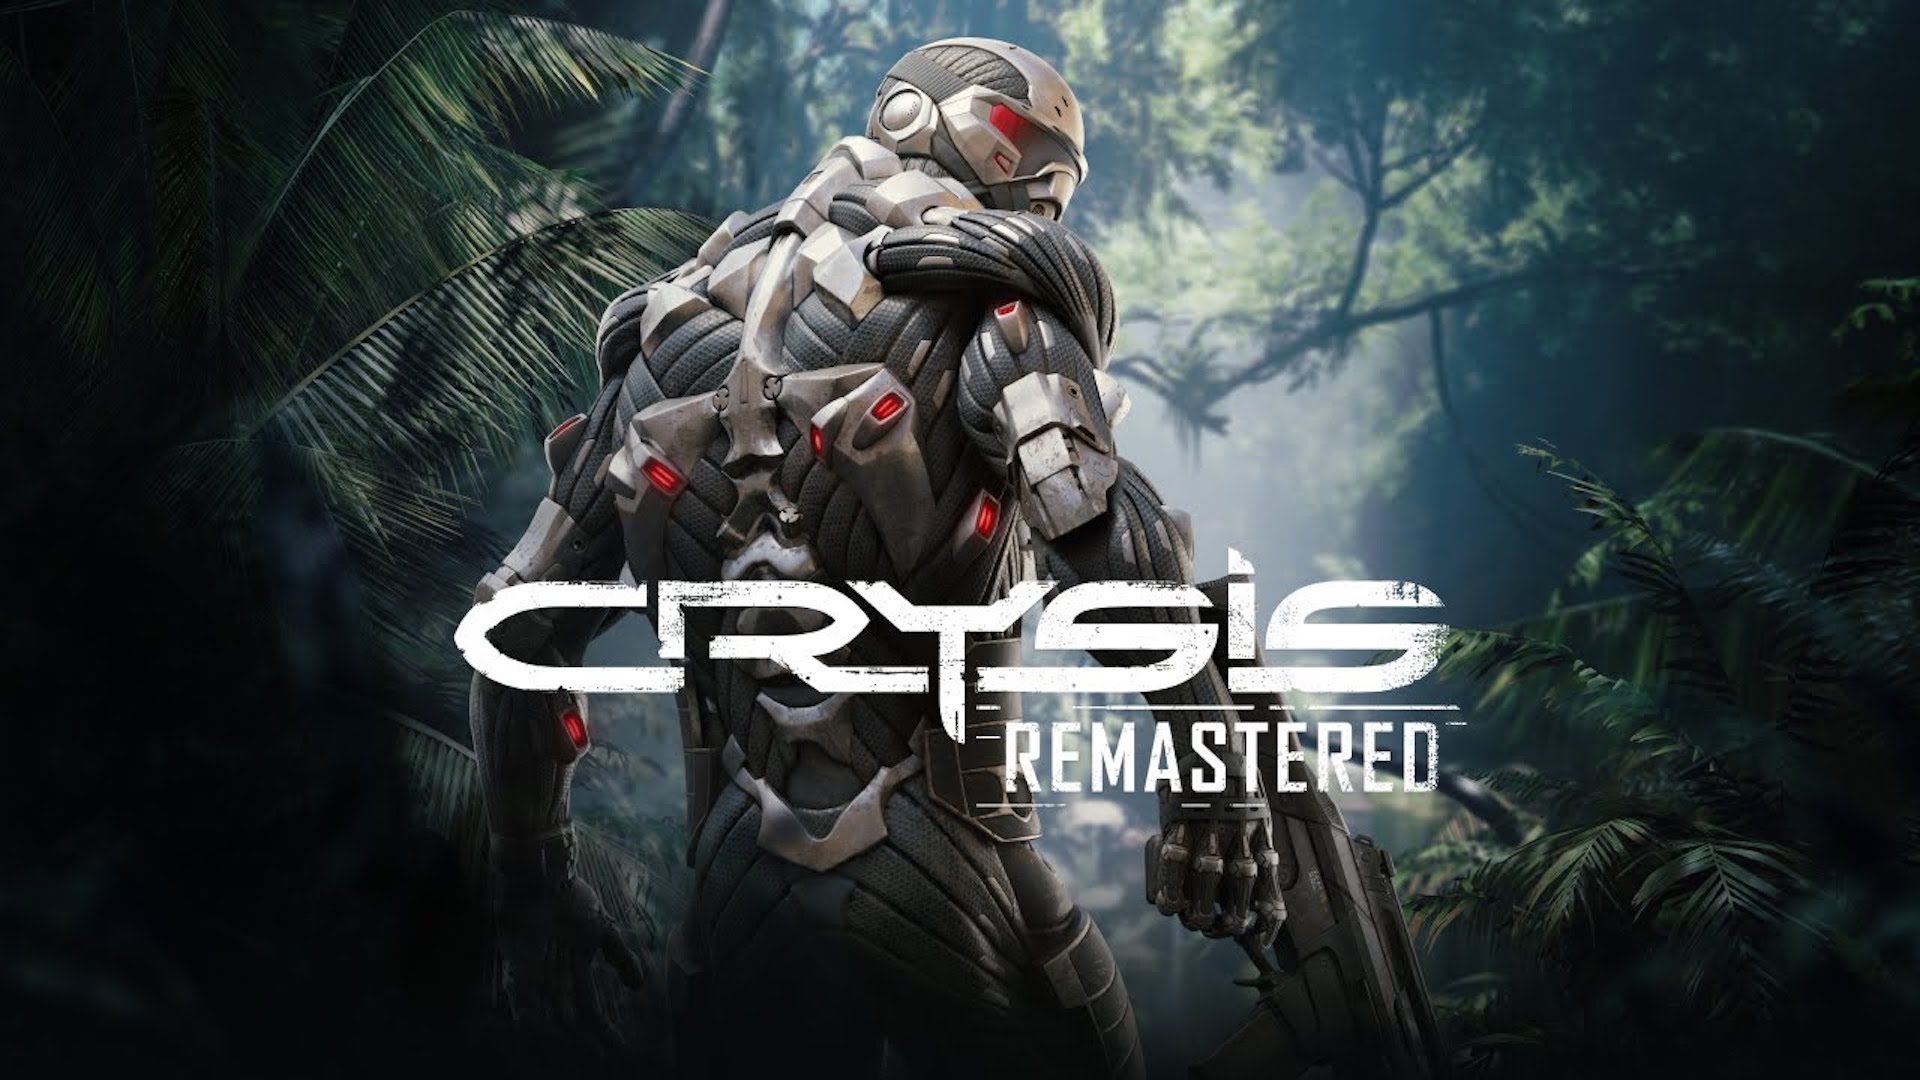 Crysis Remastered Features "voiko se suorittaa Crysis?" Grafiikkaasetukset PC:ssä